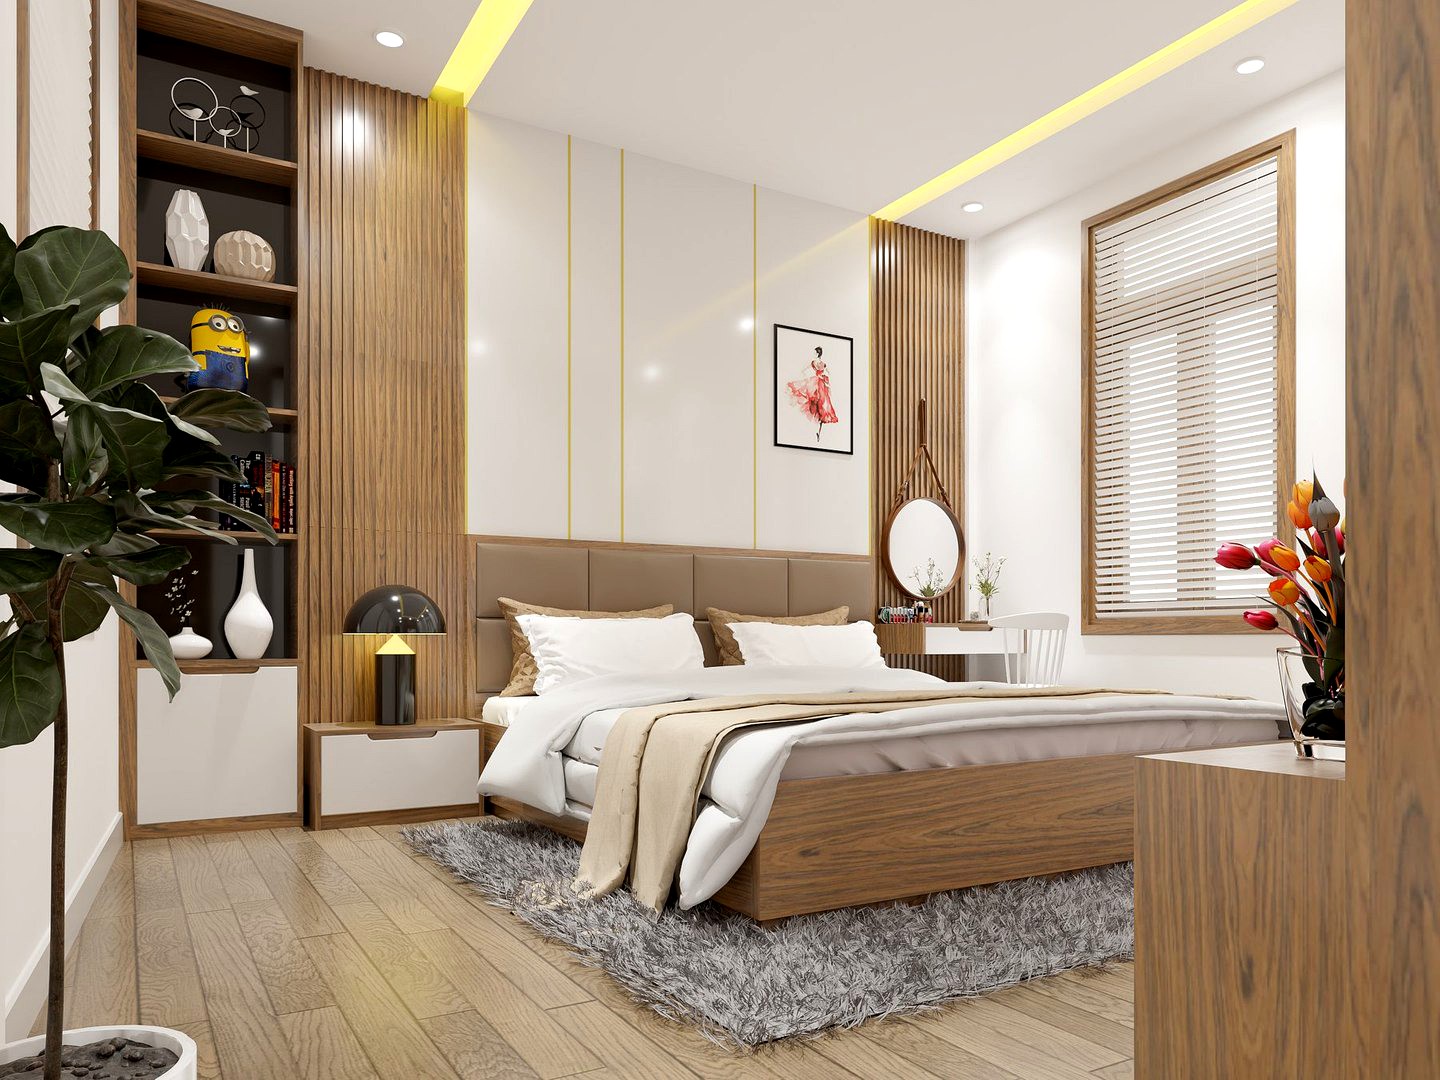 Bedroom design model